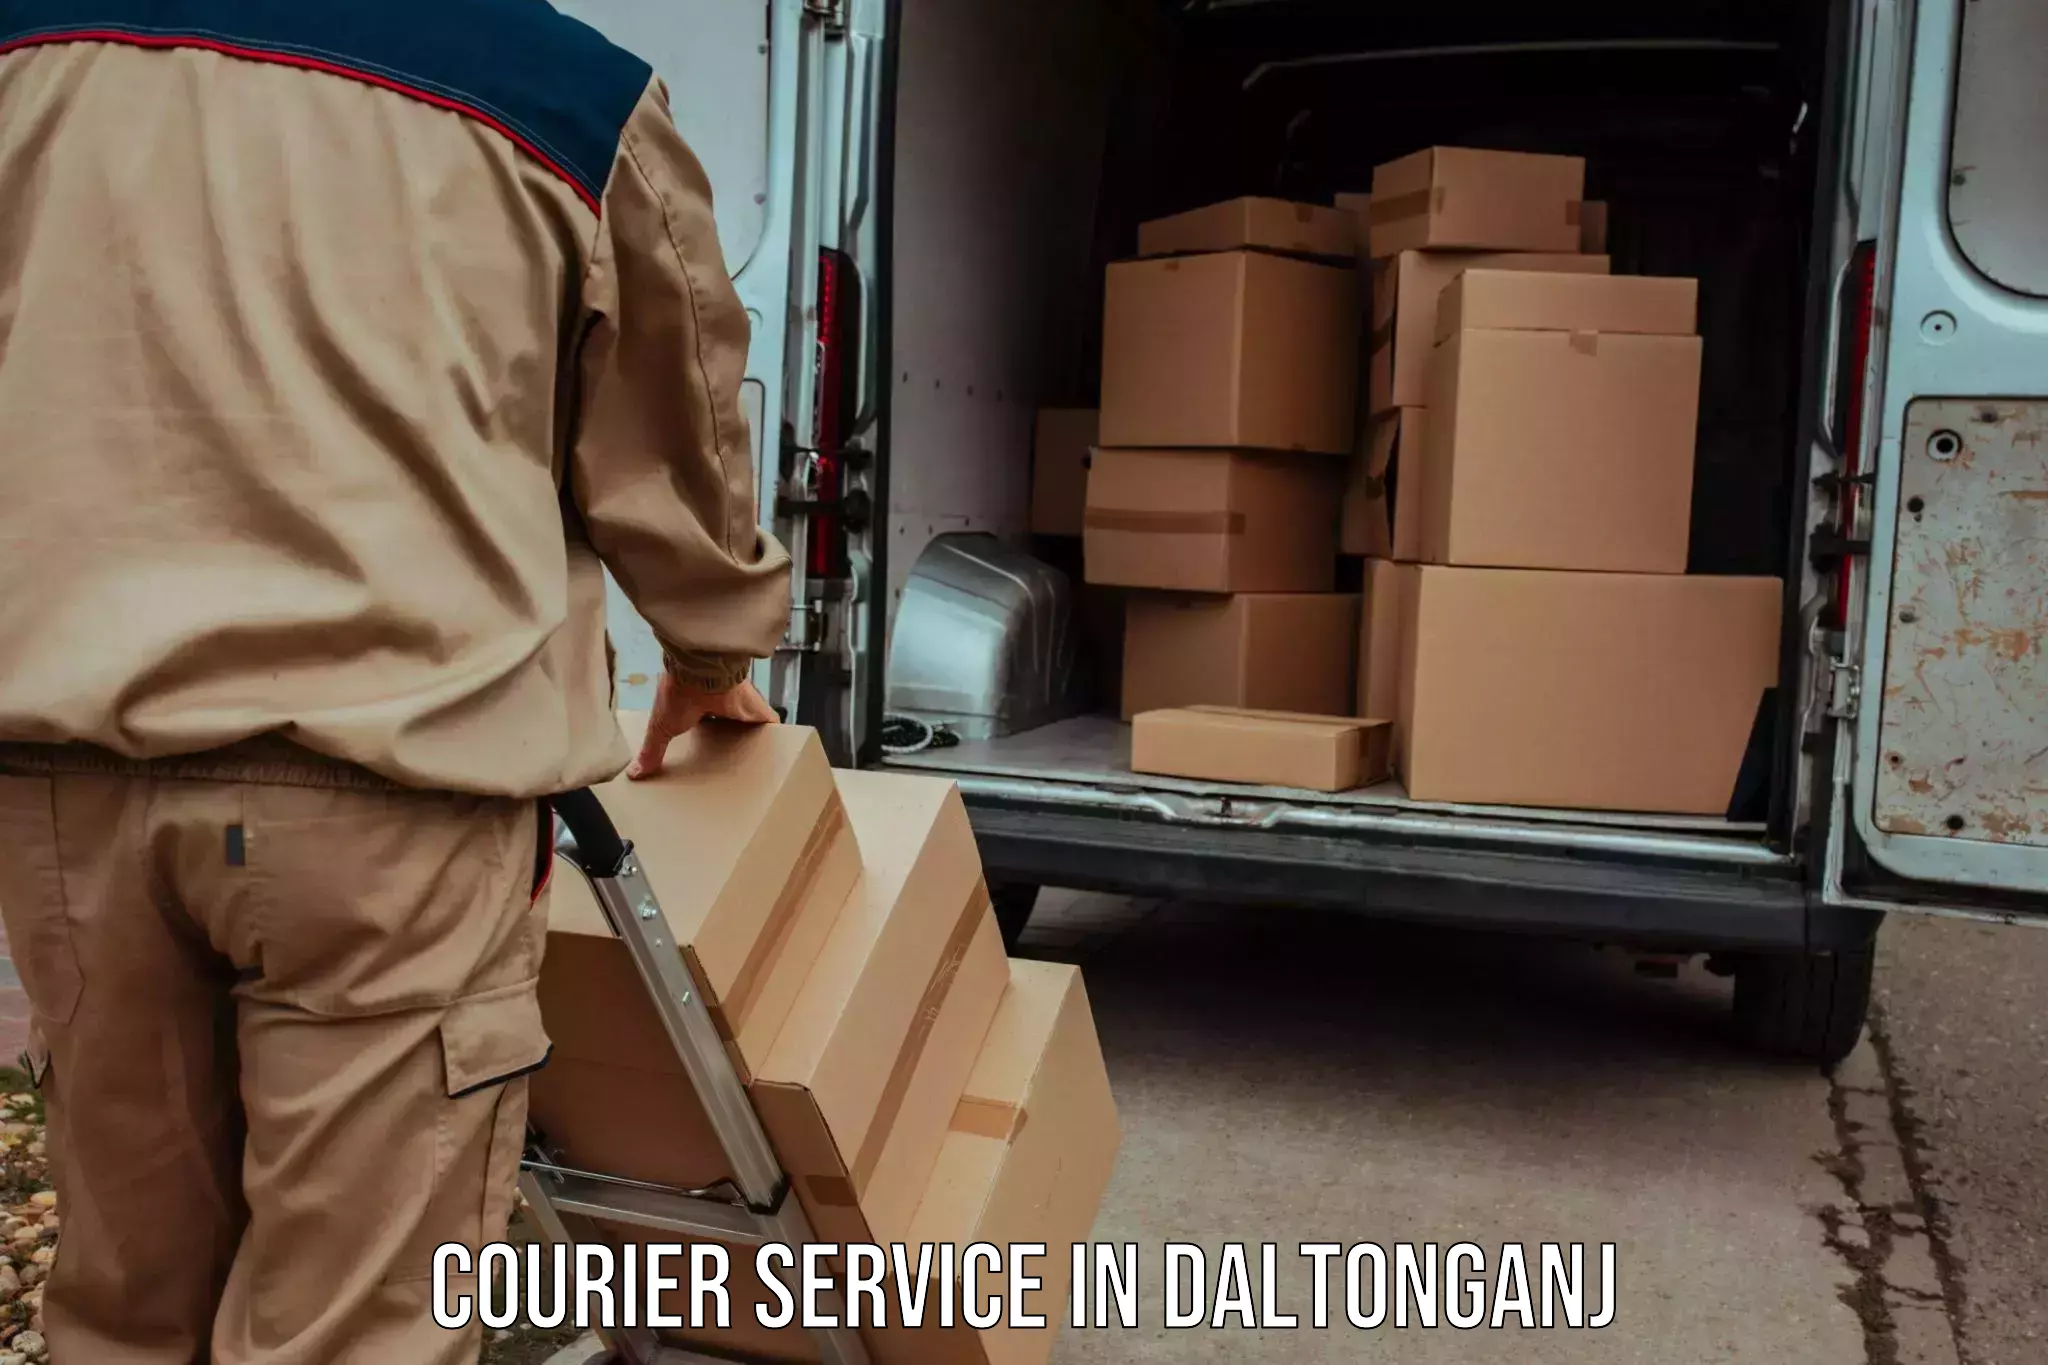 Tech-enabled shipping in Daltonganj